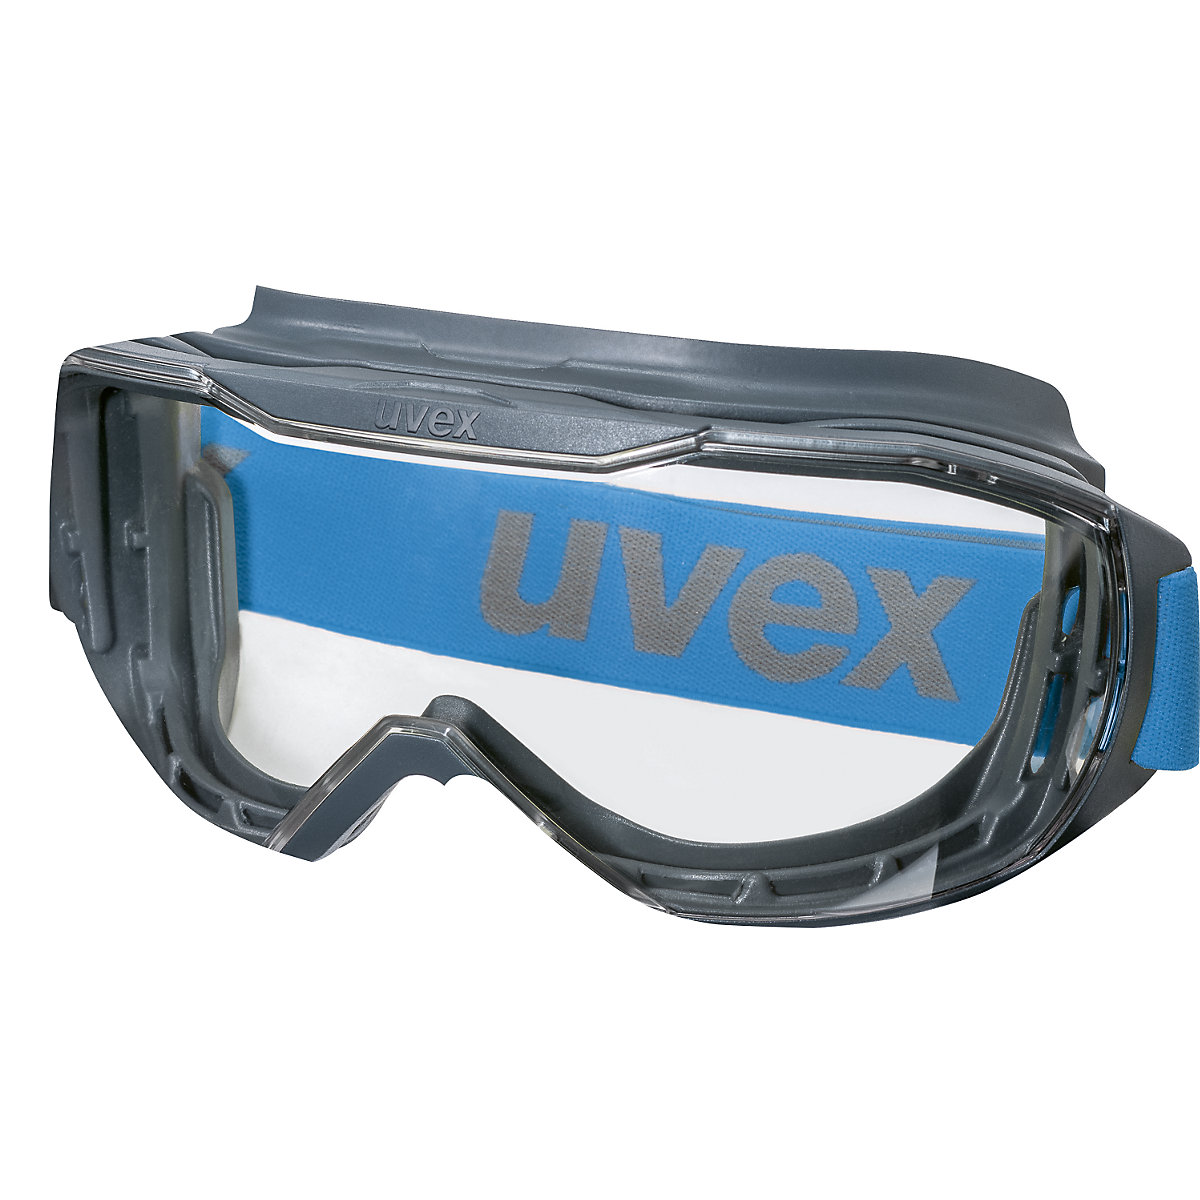 megasonic teljes látóterű védőszemüveg – Uvex